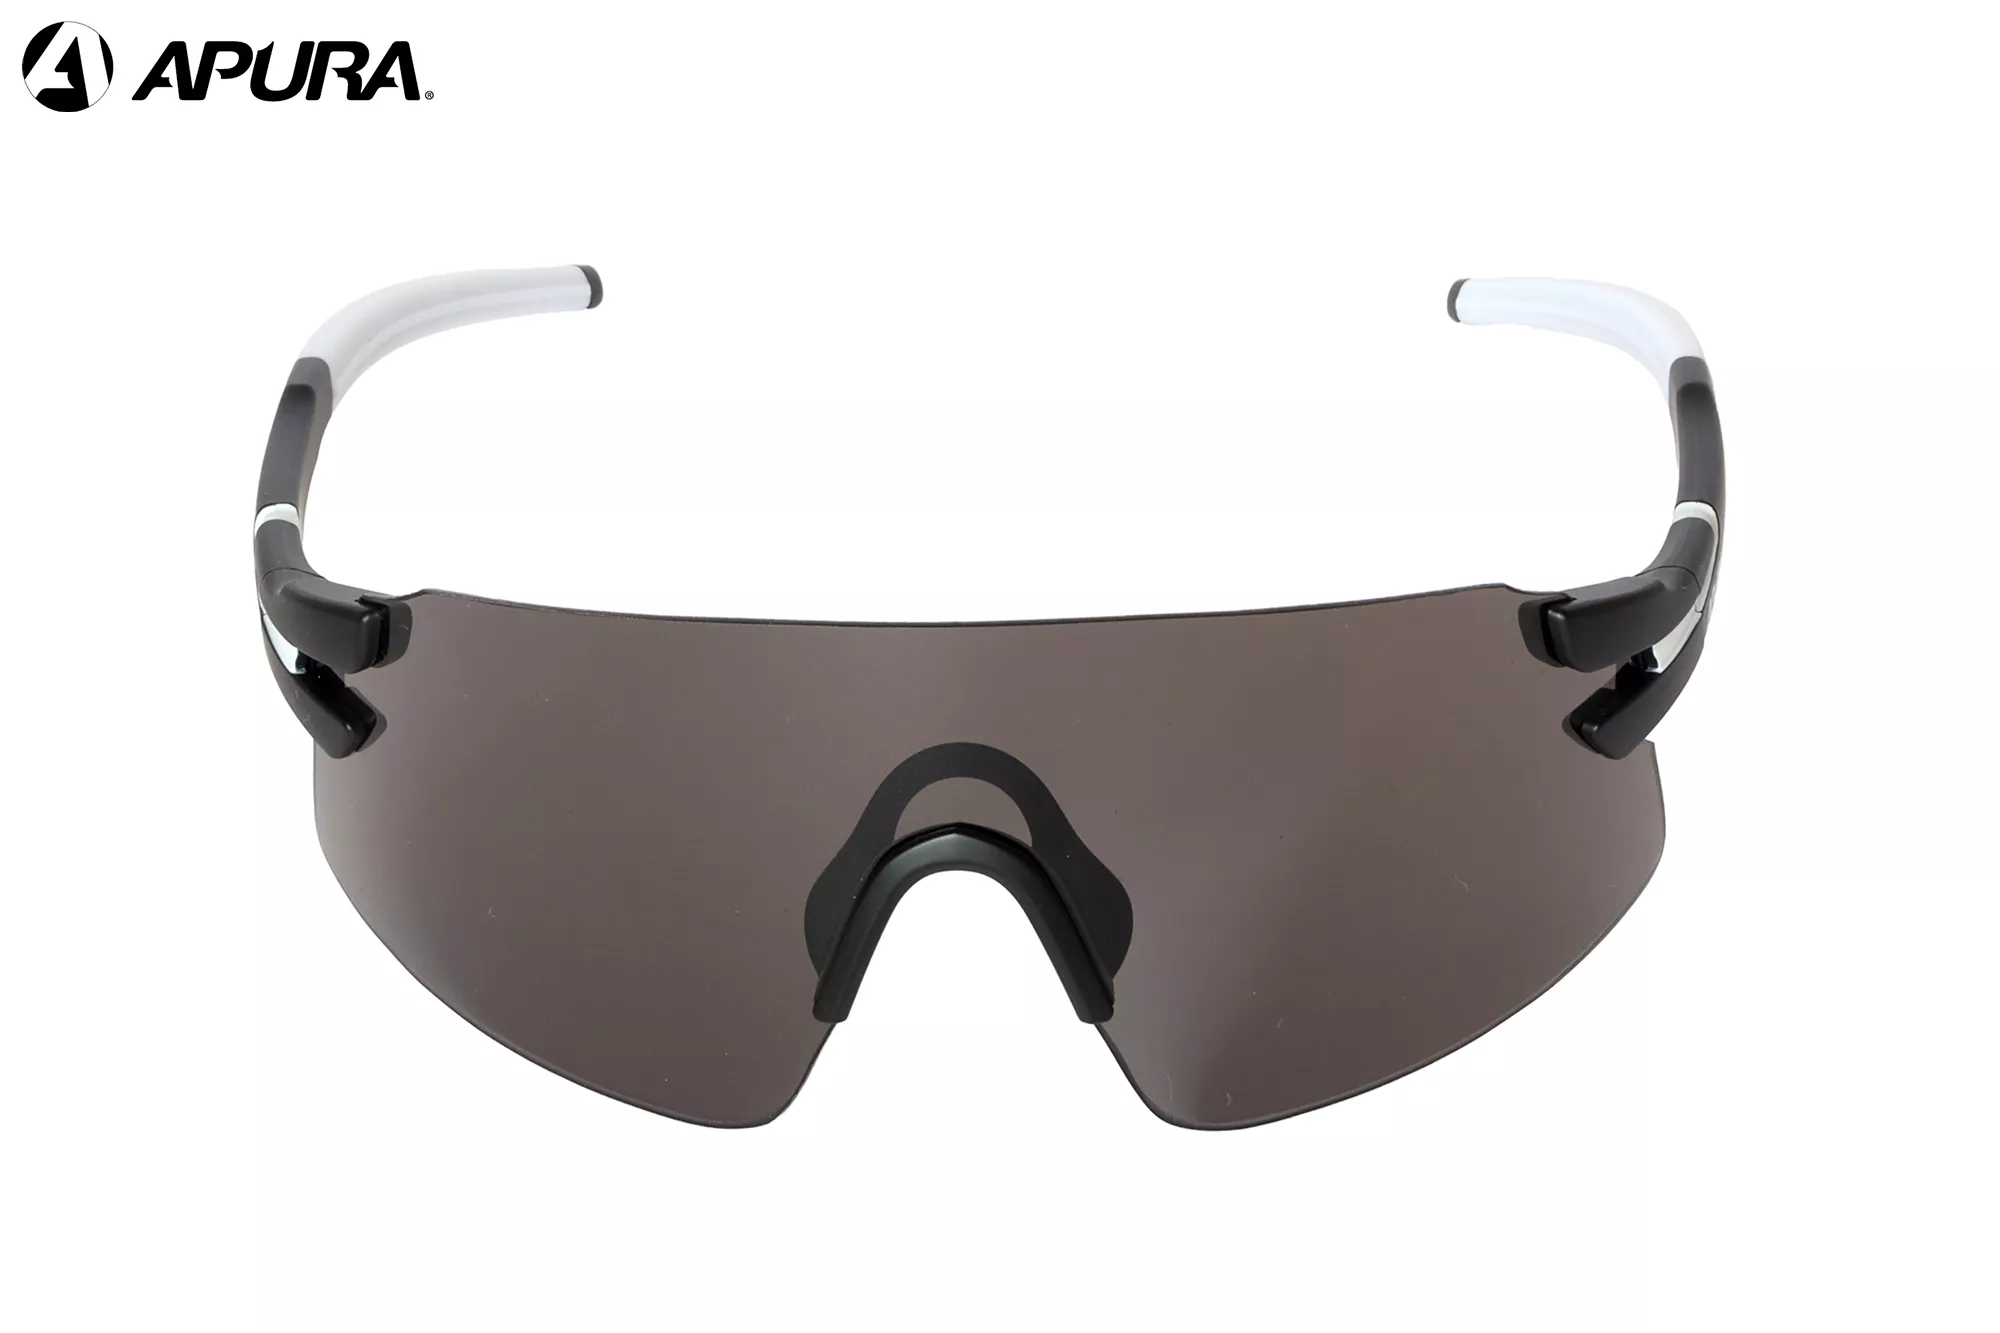 APURA Trilhas C1 - schwarz / weiß - Sonnenbrille Erwachsene